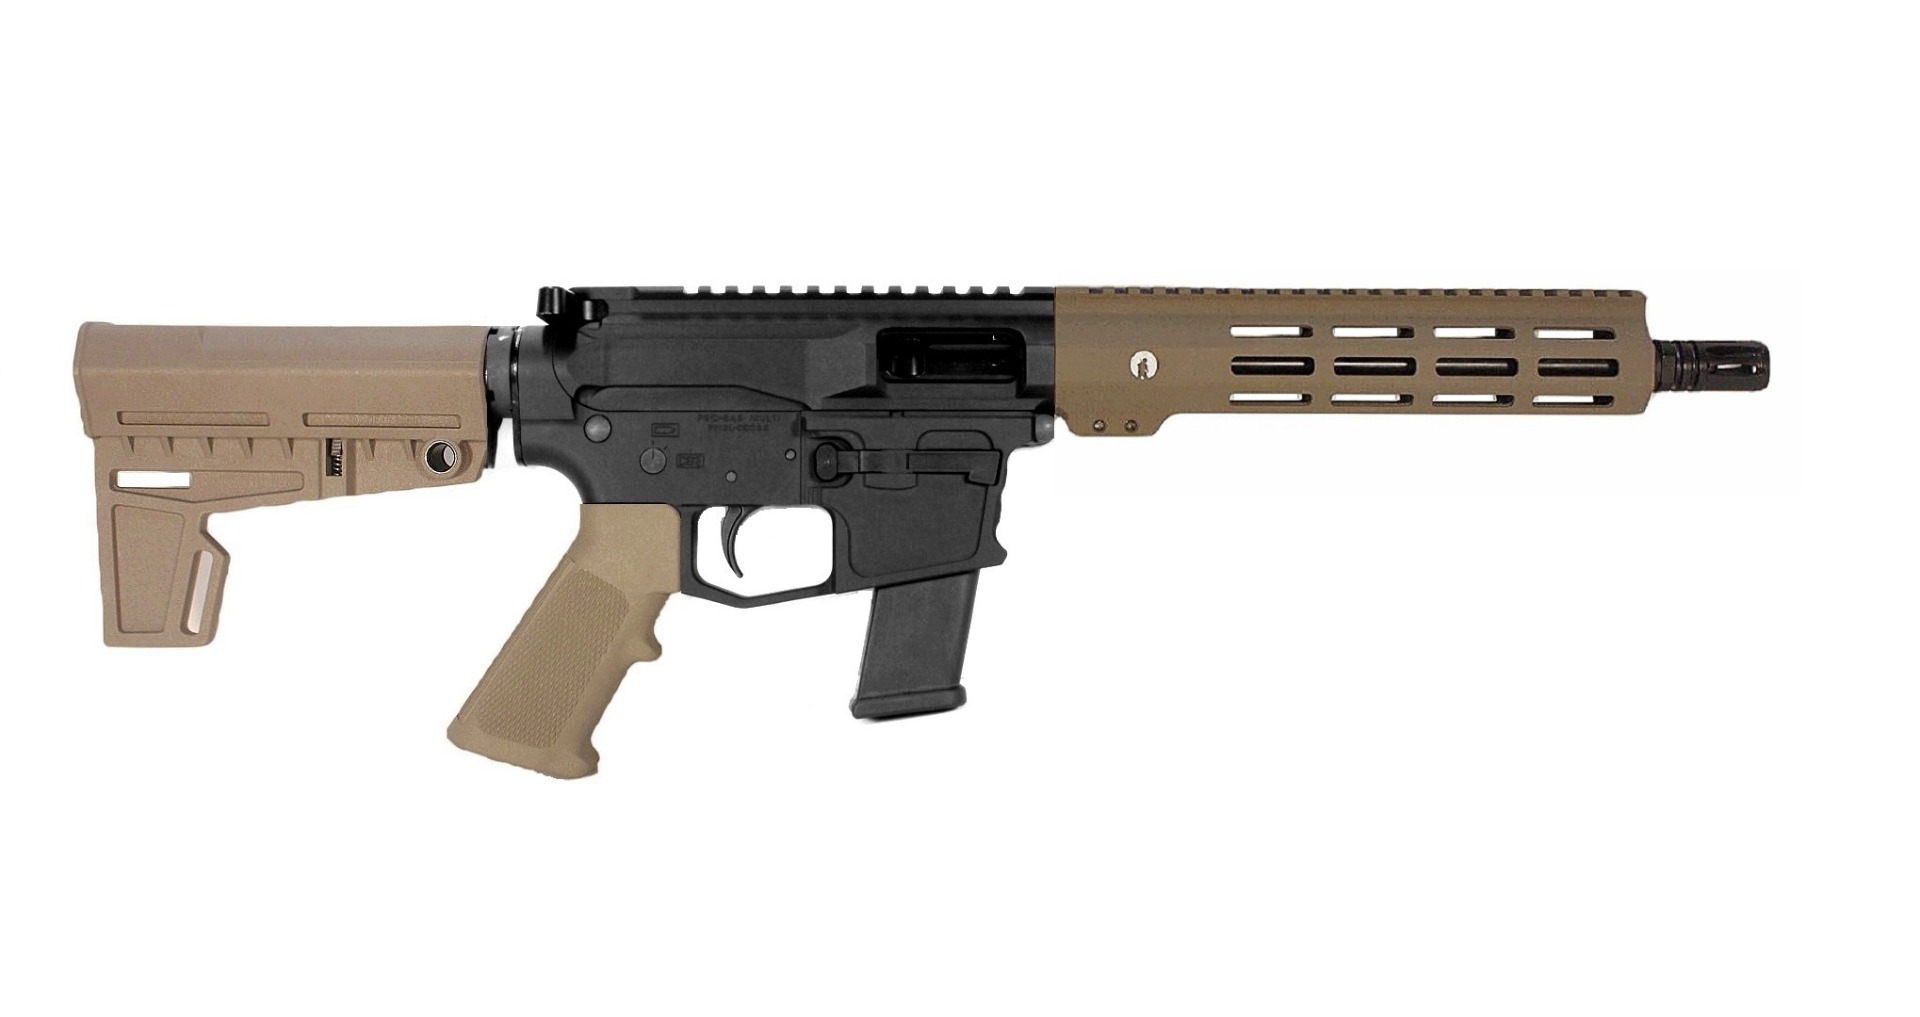 10.5 inch 10mm PCC Pistol in BLK/FDE